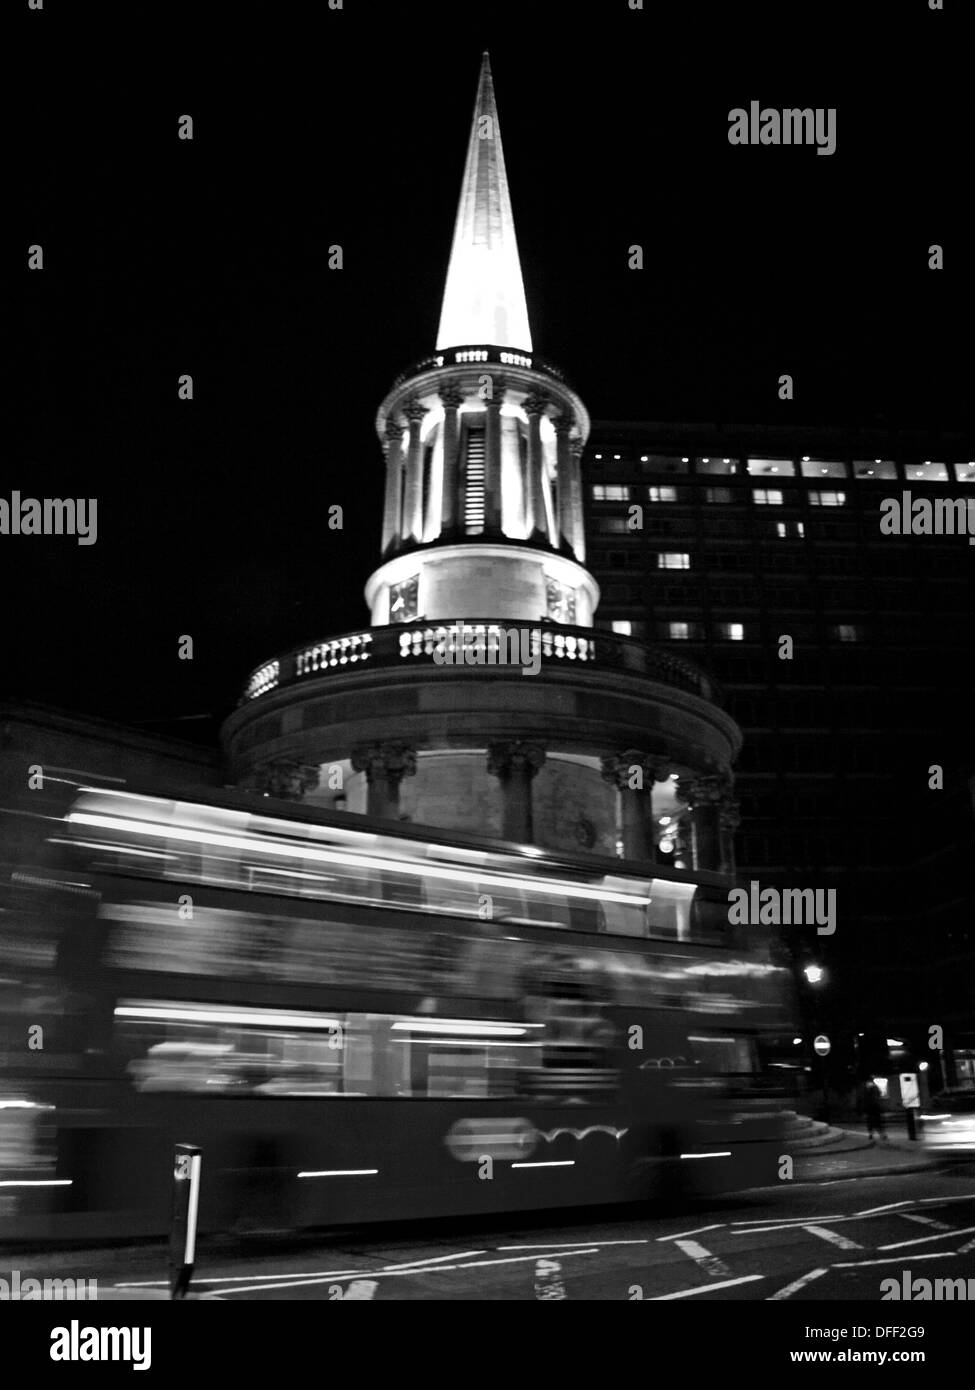 Double-decker bus en face de l'Église toutes les âmes dans la nuit, le Langham Place, Londres, Angleterre, Royaume-Uni Banque D'Images